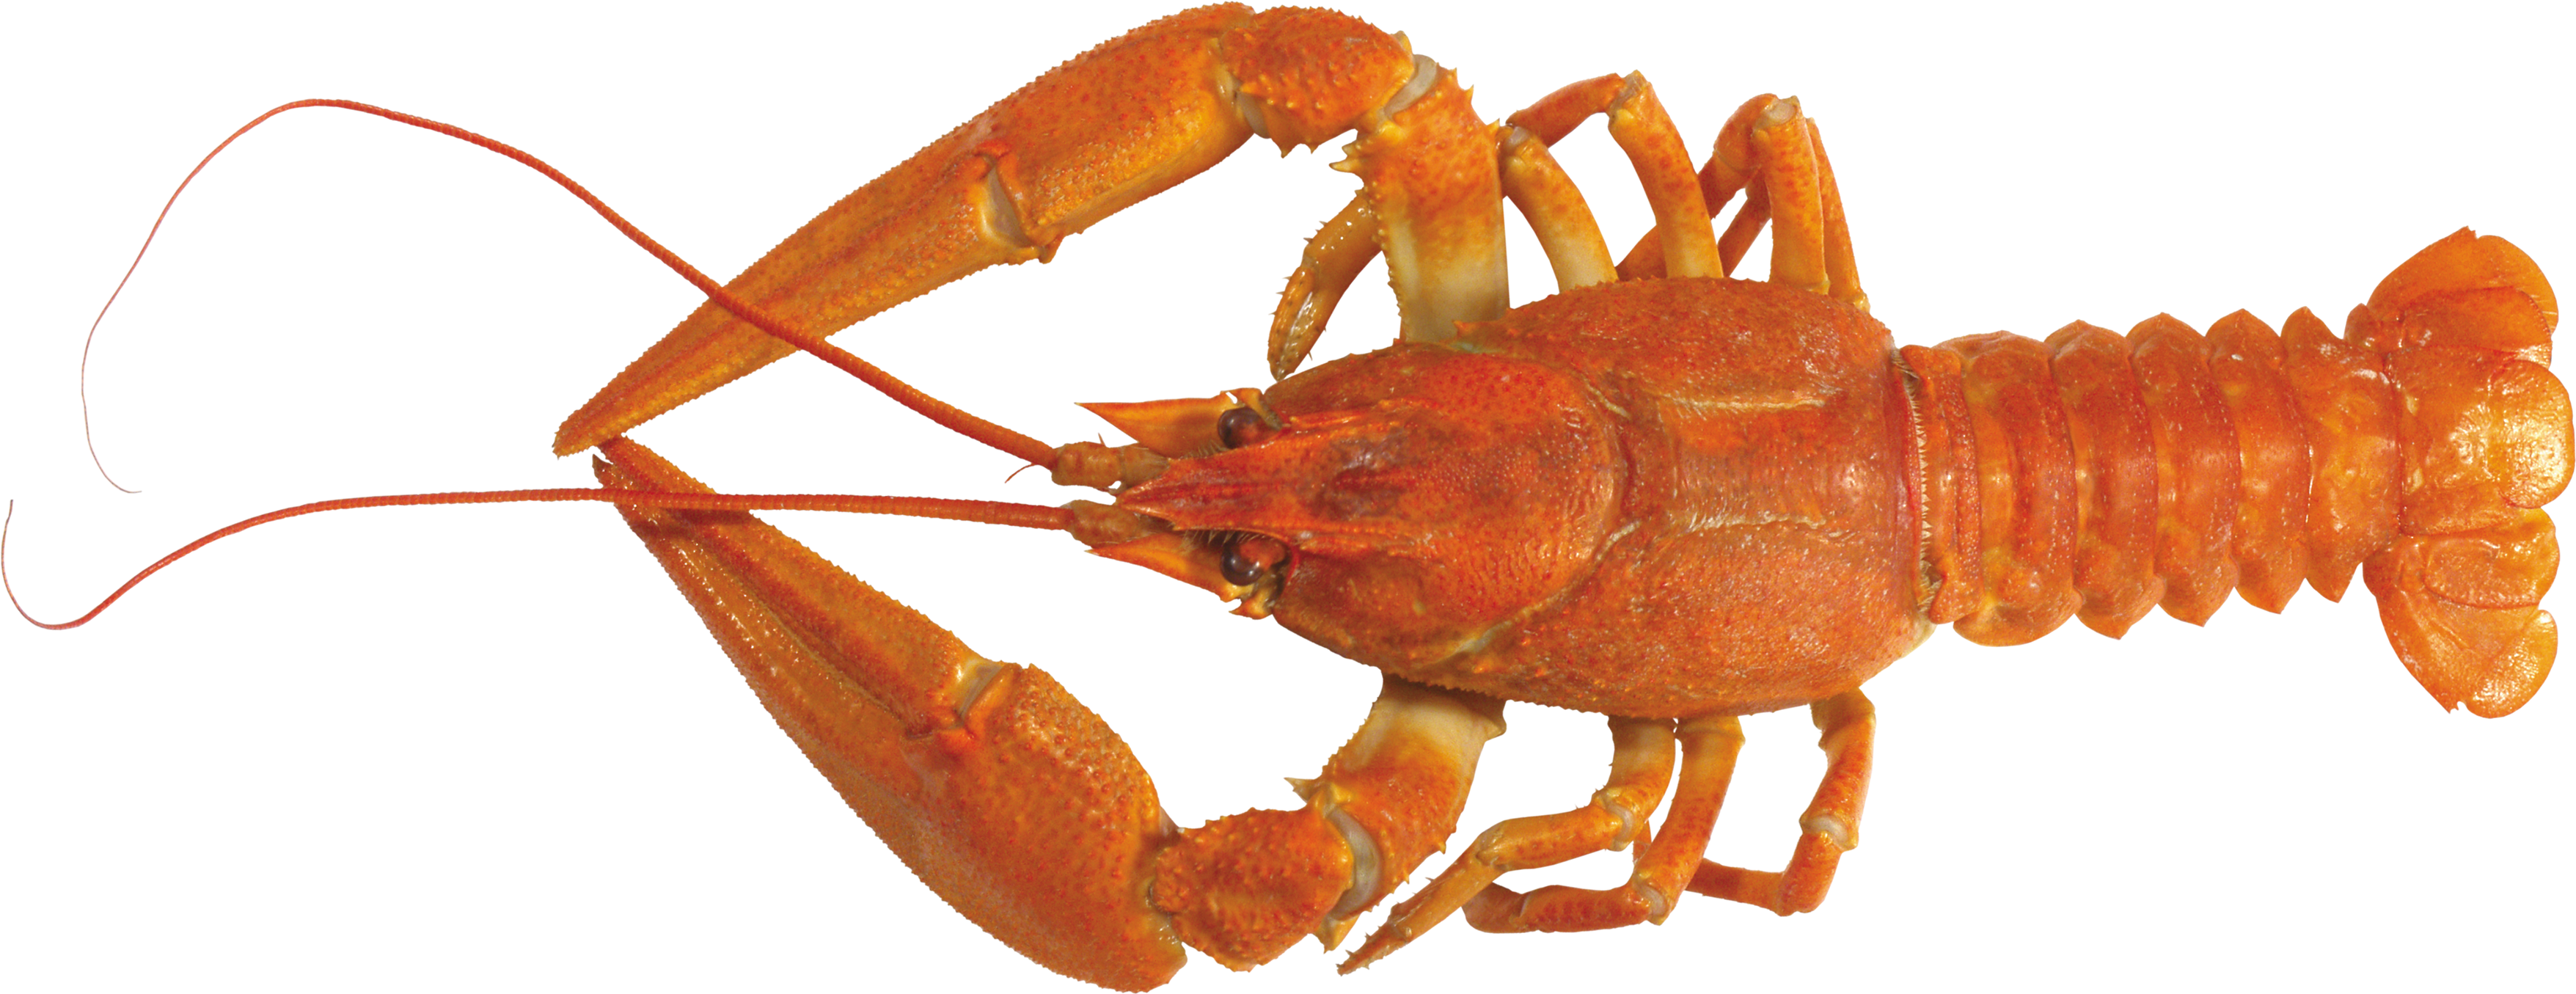 Lobster PNG images Download